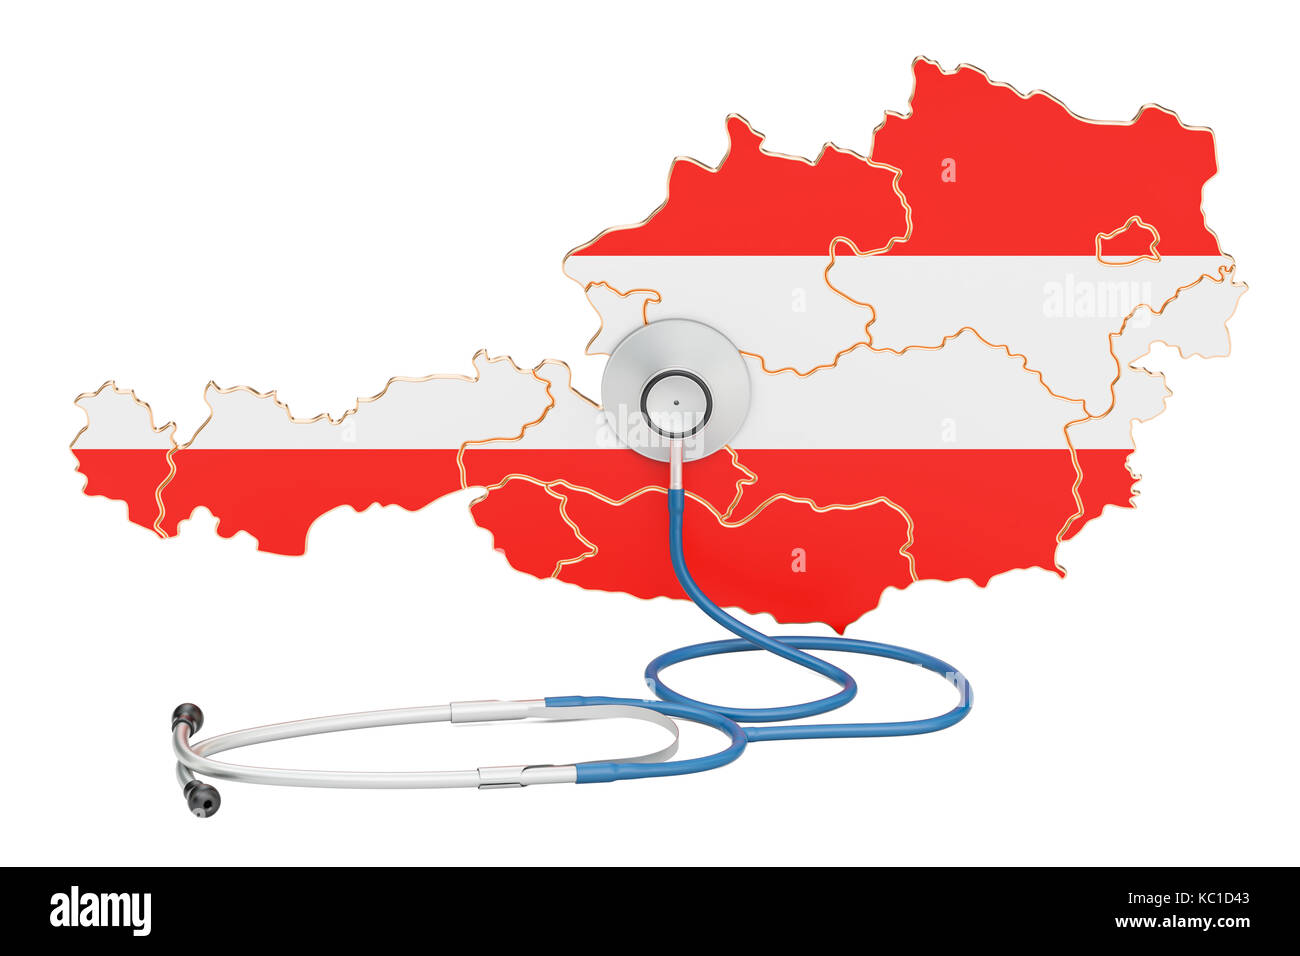 Österreichische Karte mit Stethoskop, national Health Care Concept, 3D-Rendering Stockfoto